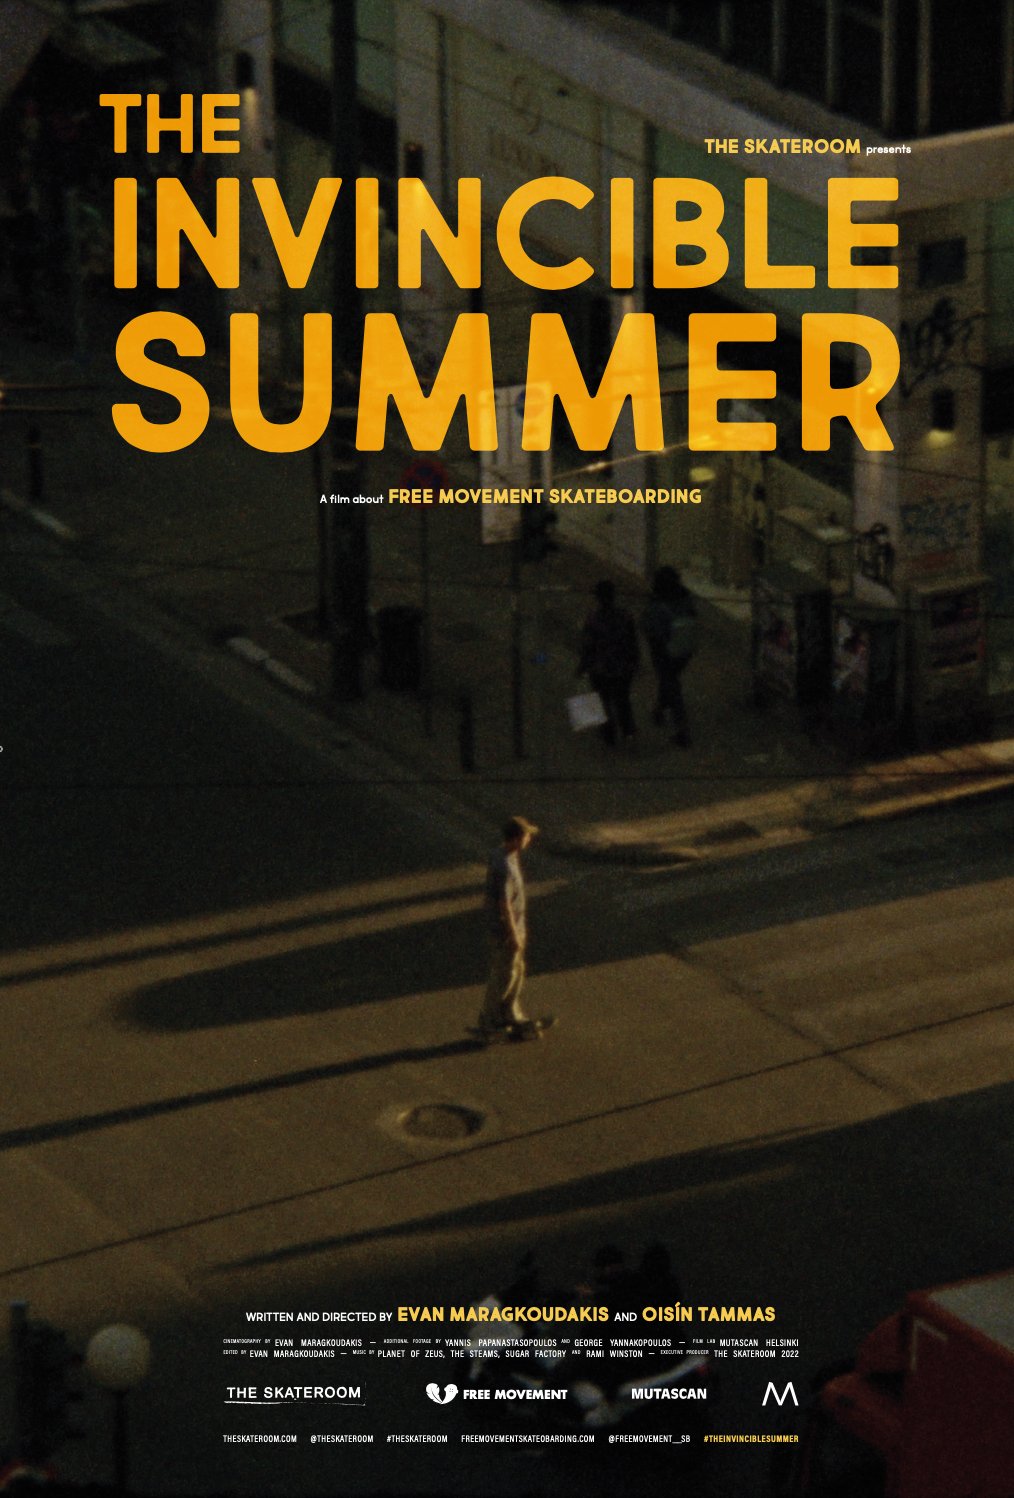 Invincible - Short Film